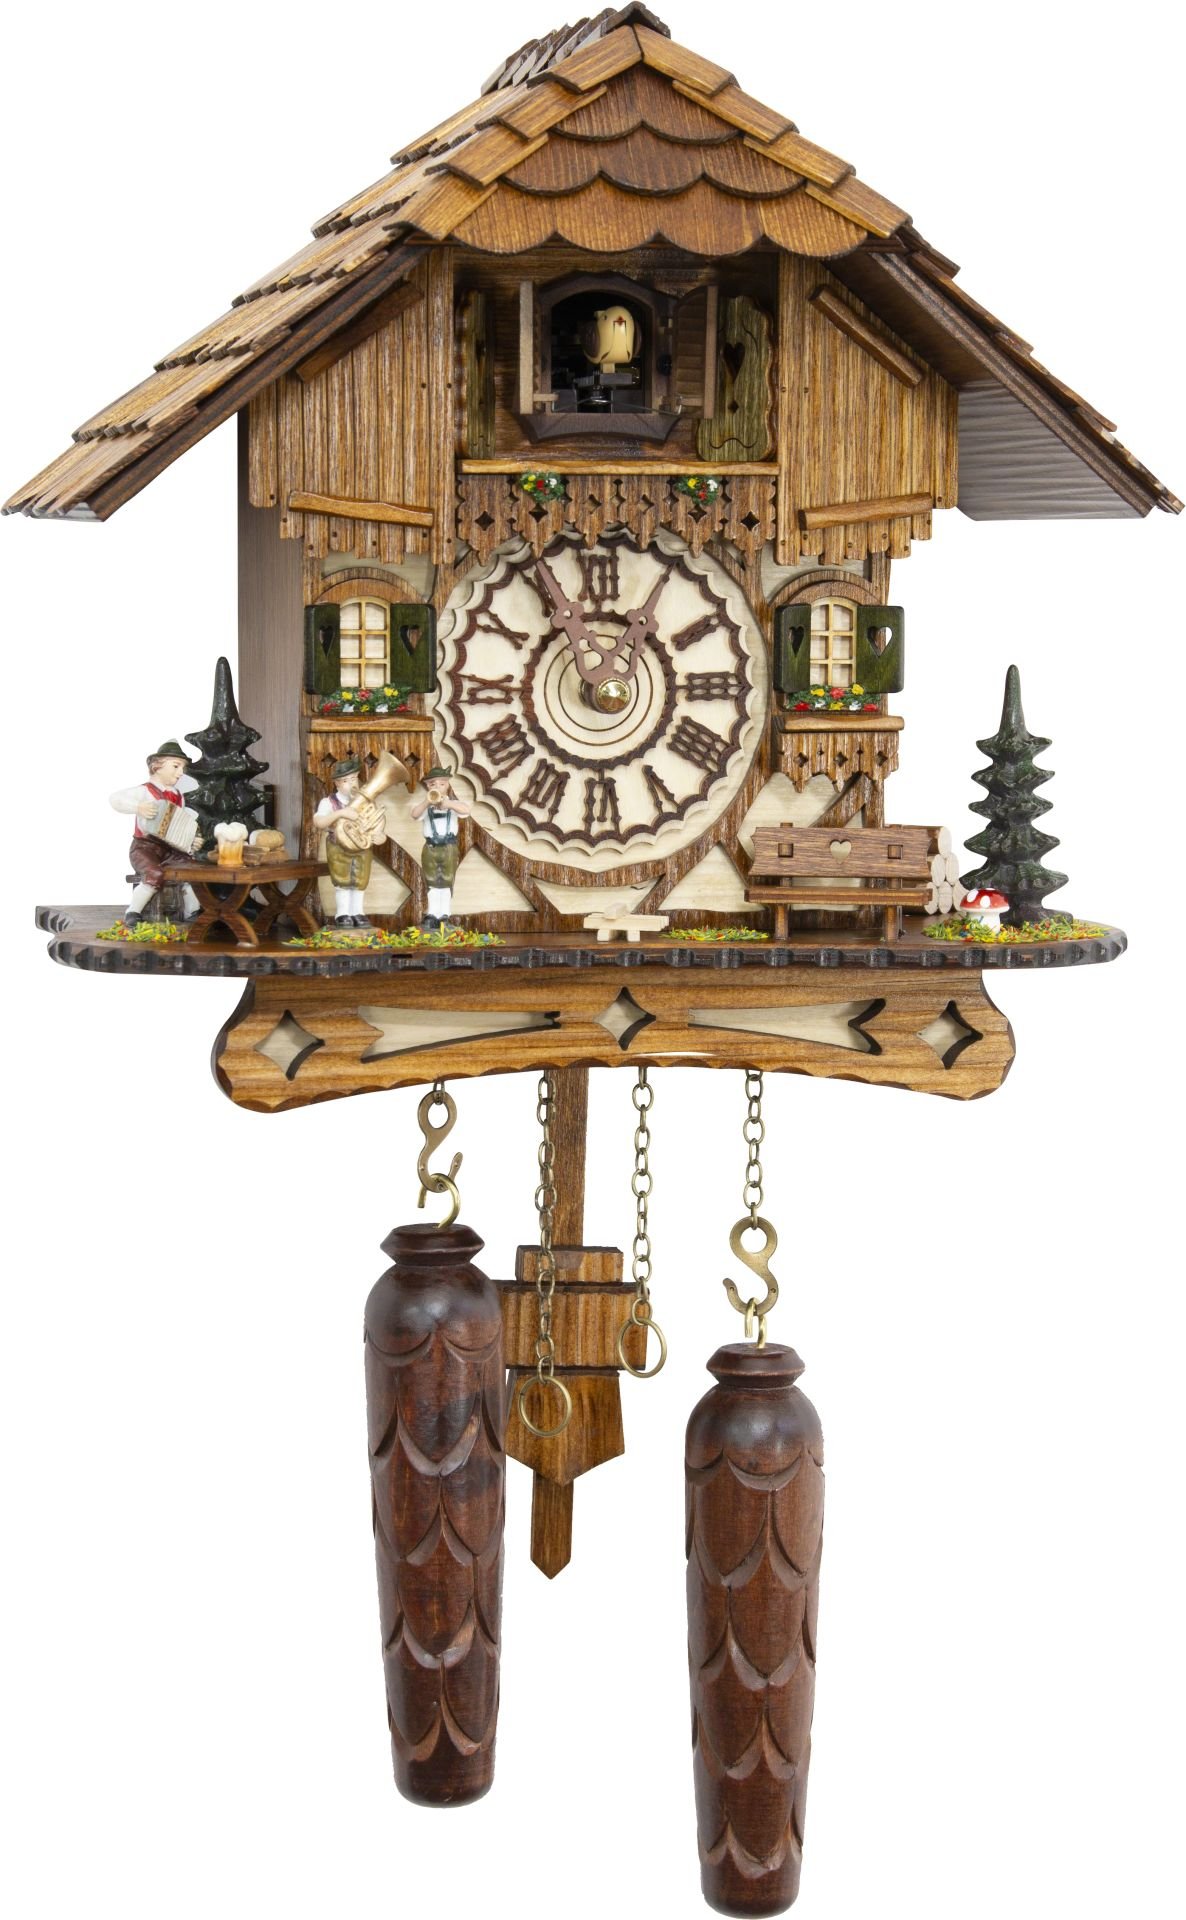 Kuckucksuhr Chalet-Stil Quarz-Uhrwerk 24cm von Trenkle Uhren